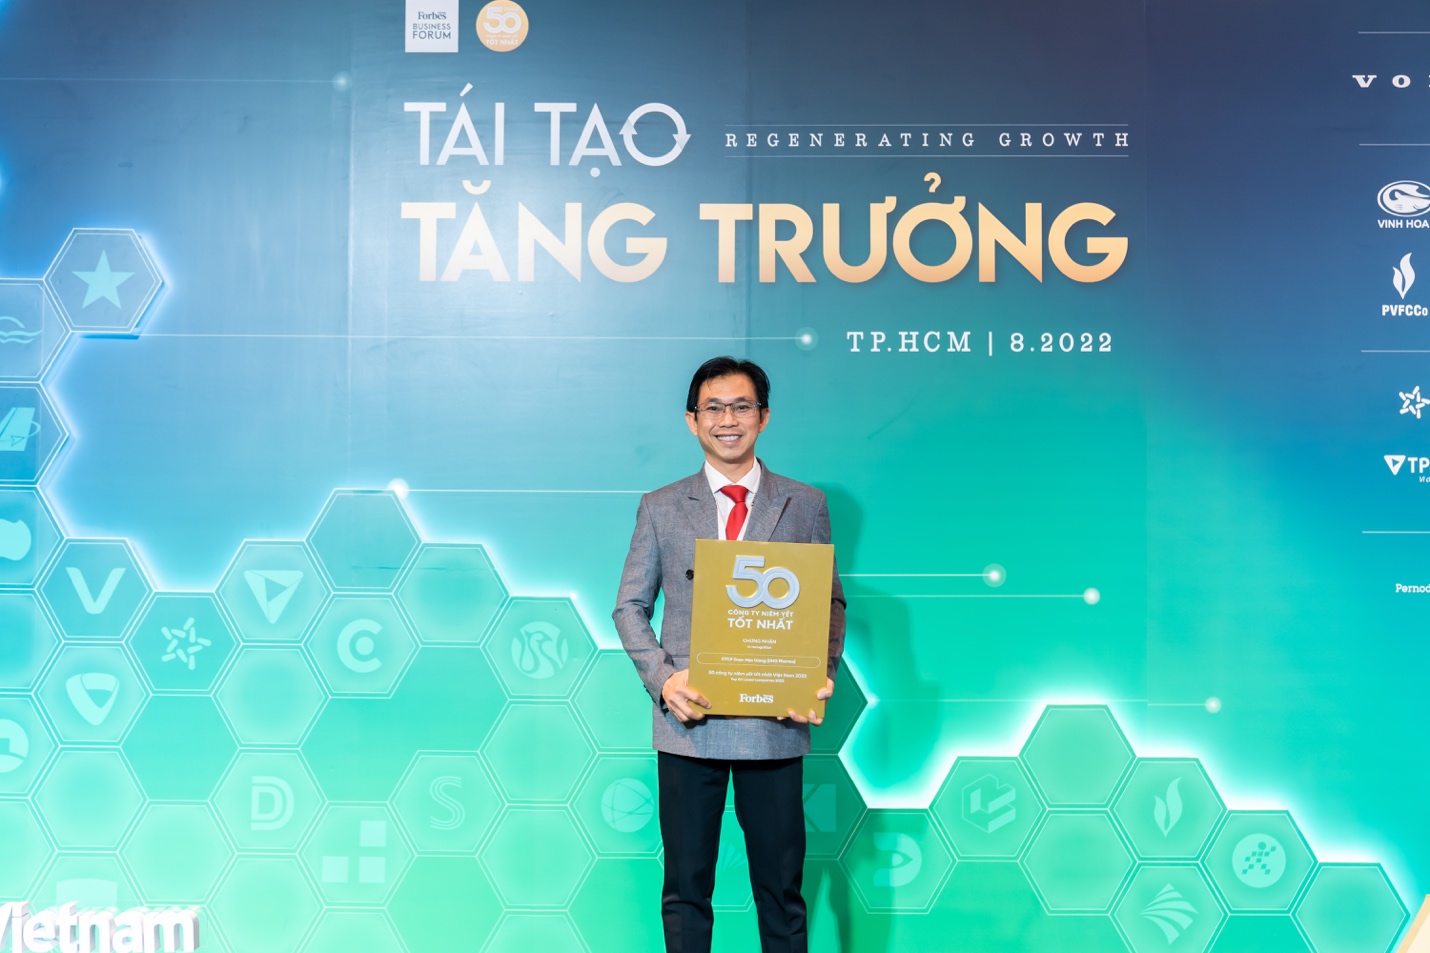 Ông Đoàn Đình Duy Khương - TGĐ Điều Hành đại diện DHG Pharma nhận danh hiệu "Top 50 công ty niêm yết tốt nhất" - Forbes Việt Nam bình chọn 10 năm liền.